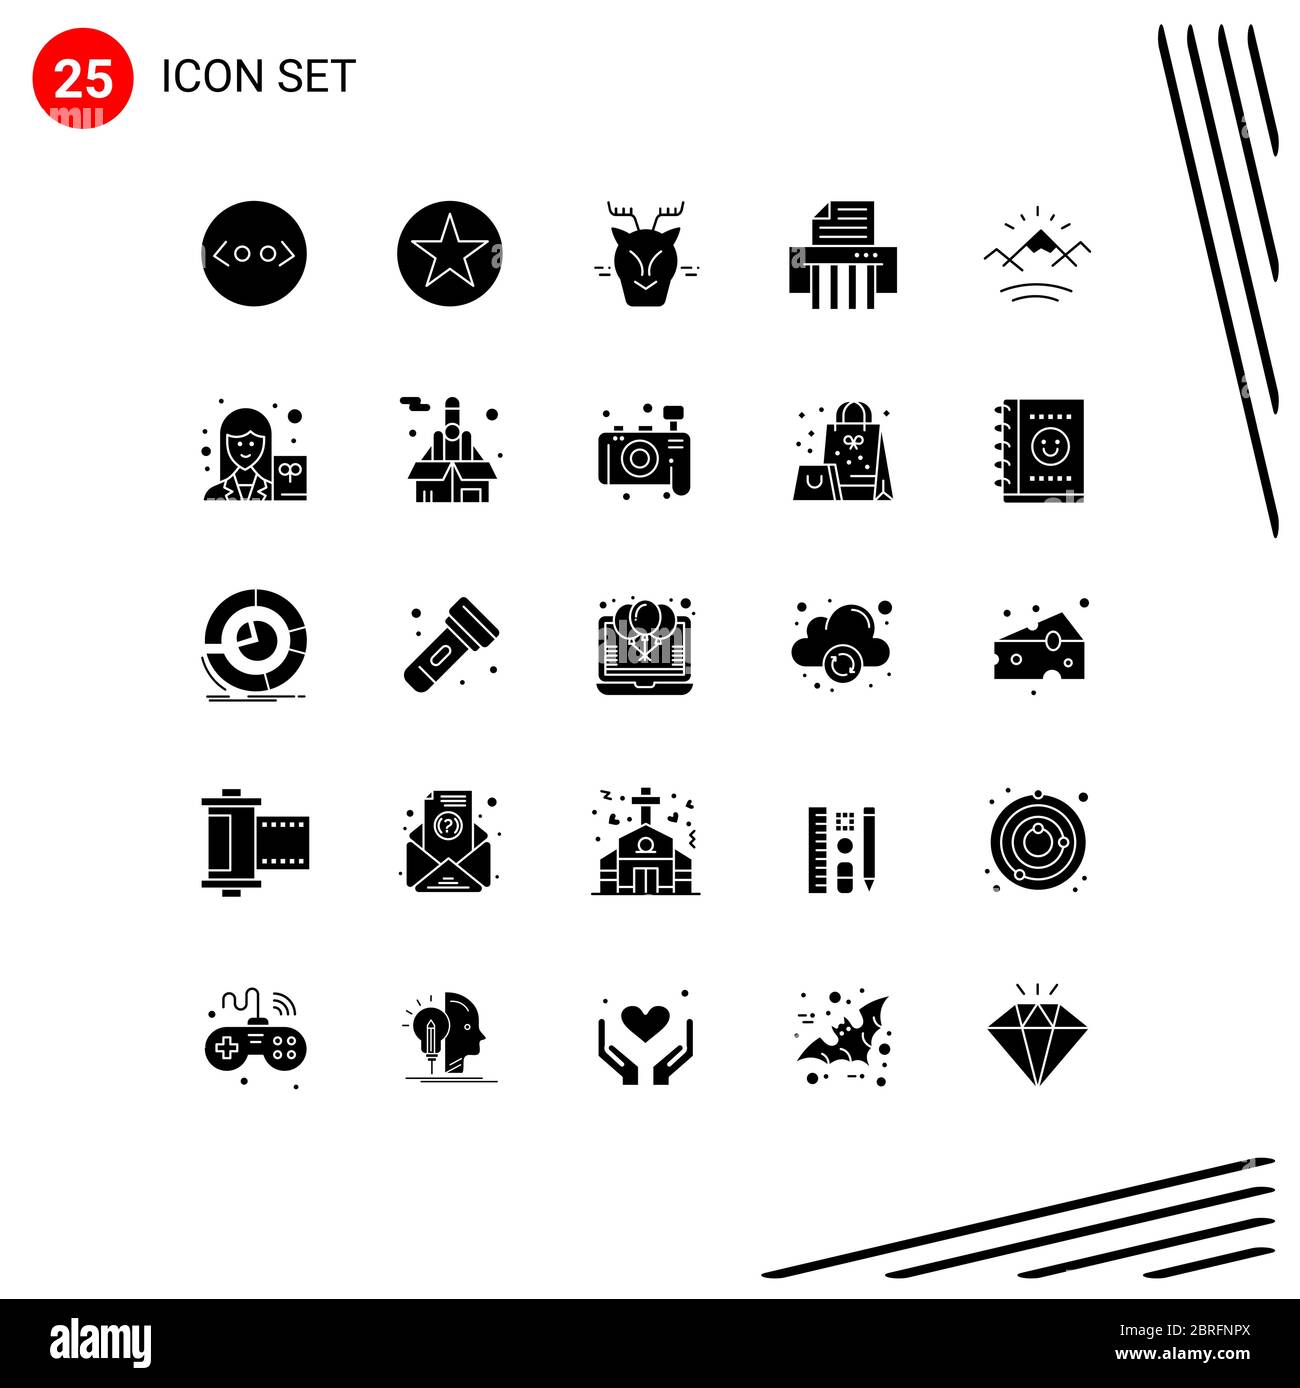 Piktogramm Set von 25 einfachen Solid Glyphen von Sonne, Berge, Alpin, Shredder, Gerät editierbar Vektor Design-Elemente Stock Vektor